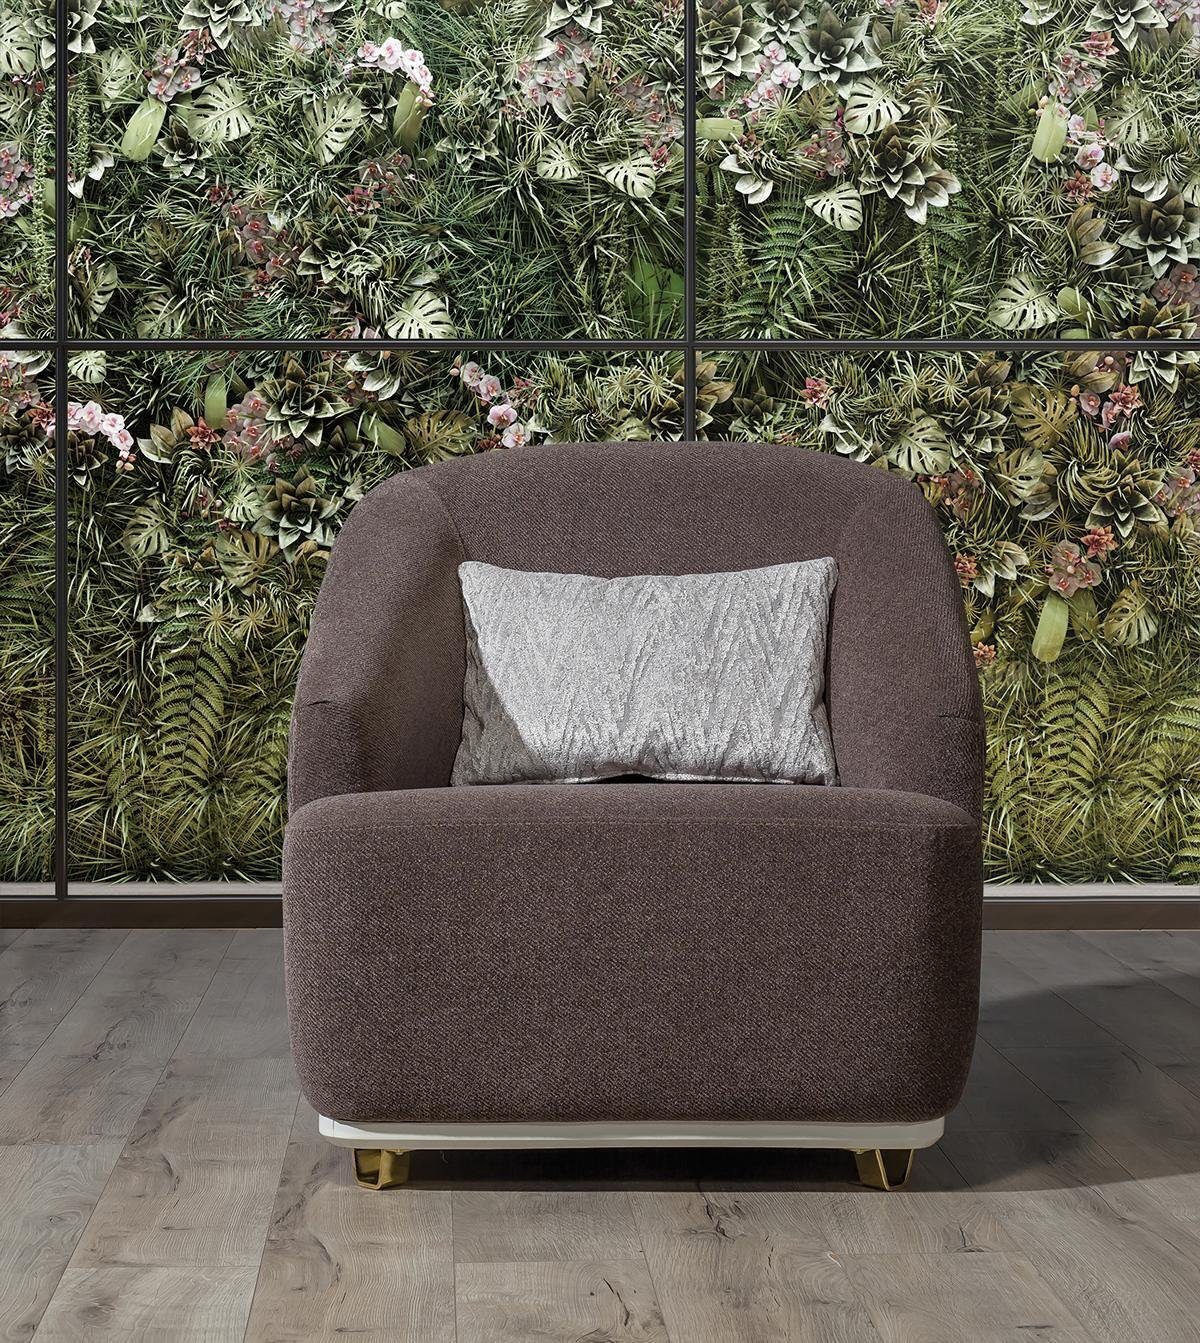 JVmoebel Sessel Wohnzimmer mit Metall Einsitzer Couch 1Sitz Sofa Sessel Möbel Textil